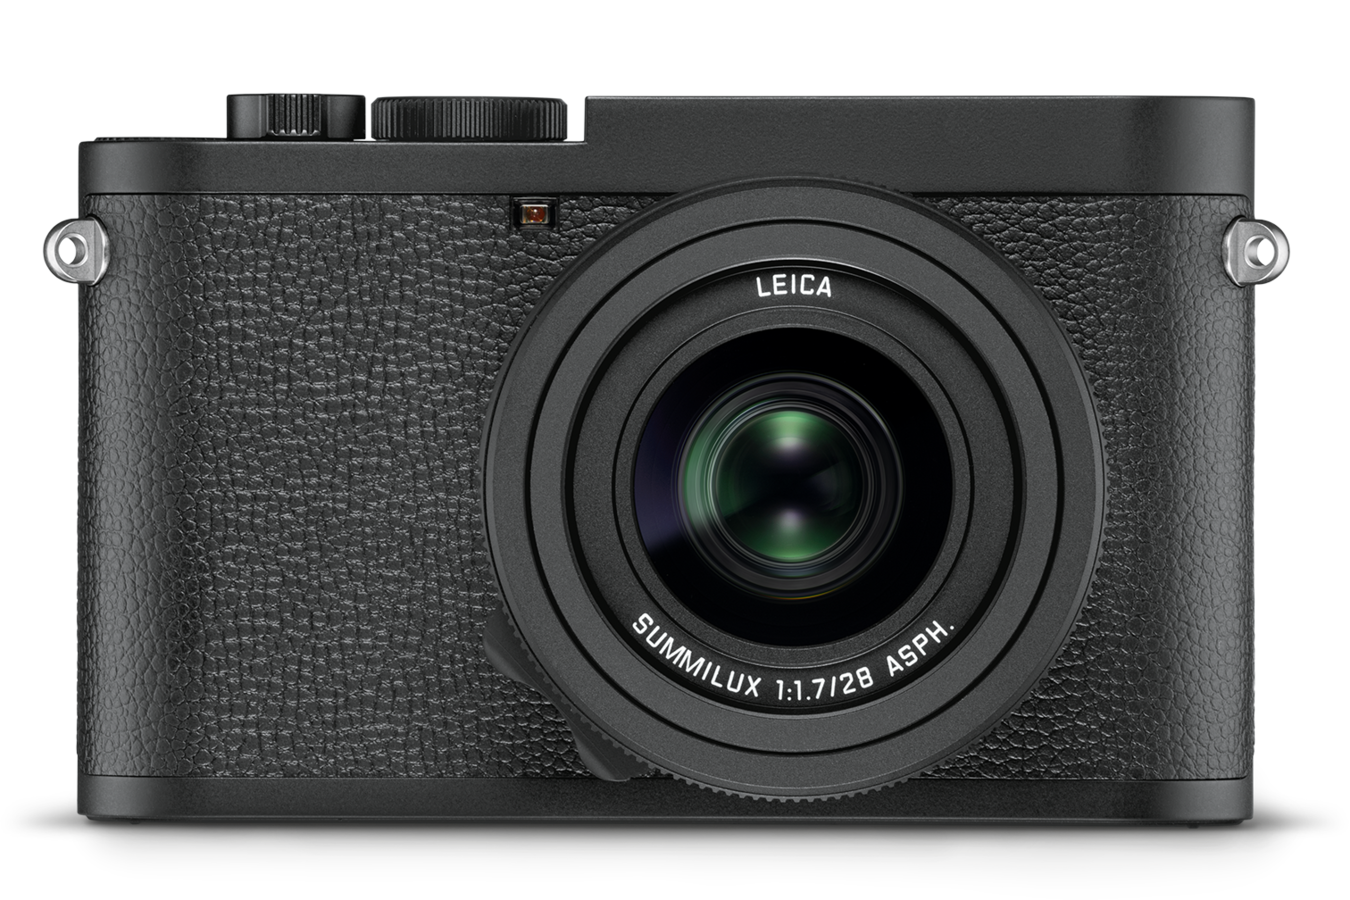 Aparat Leica Q2 Monochrom